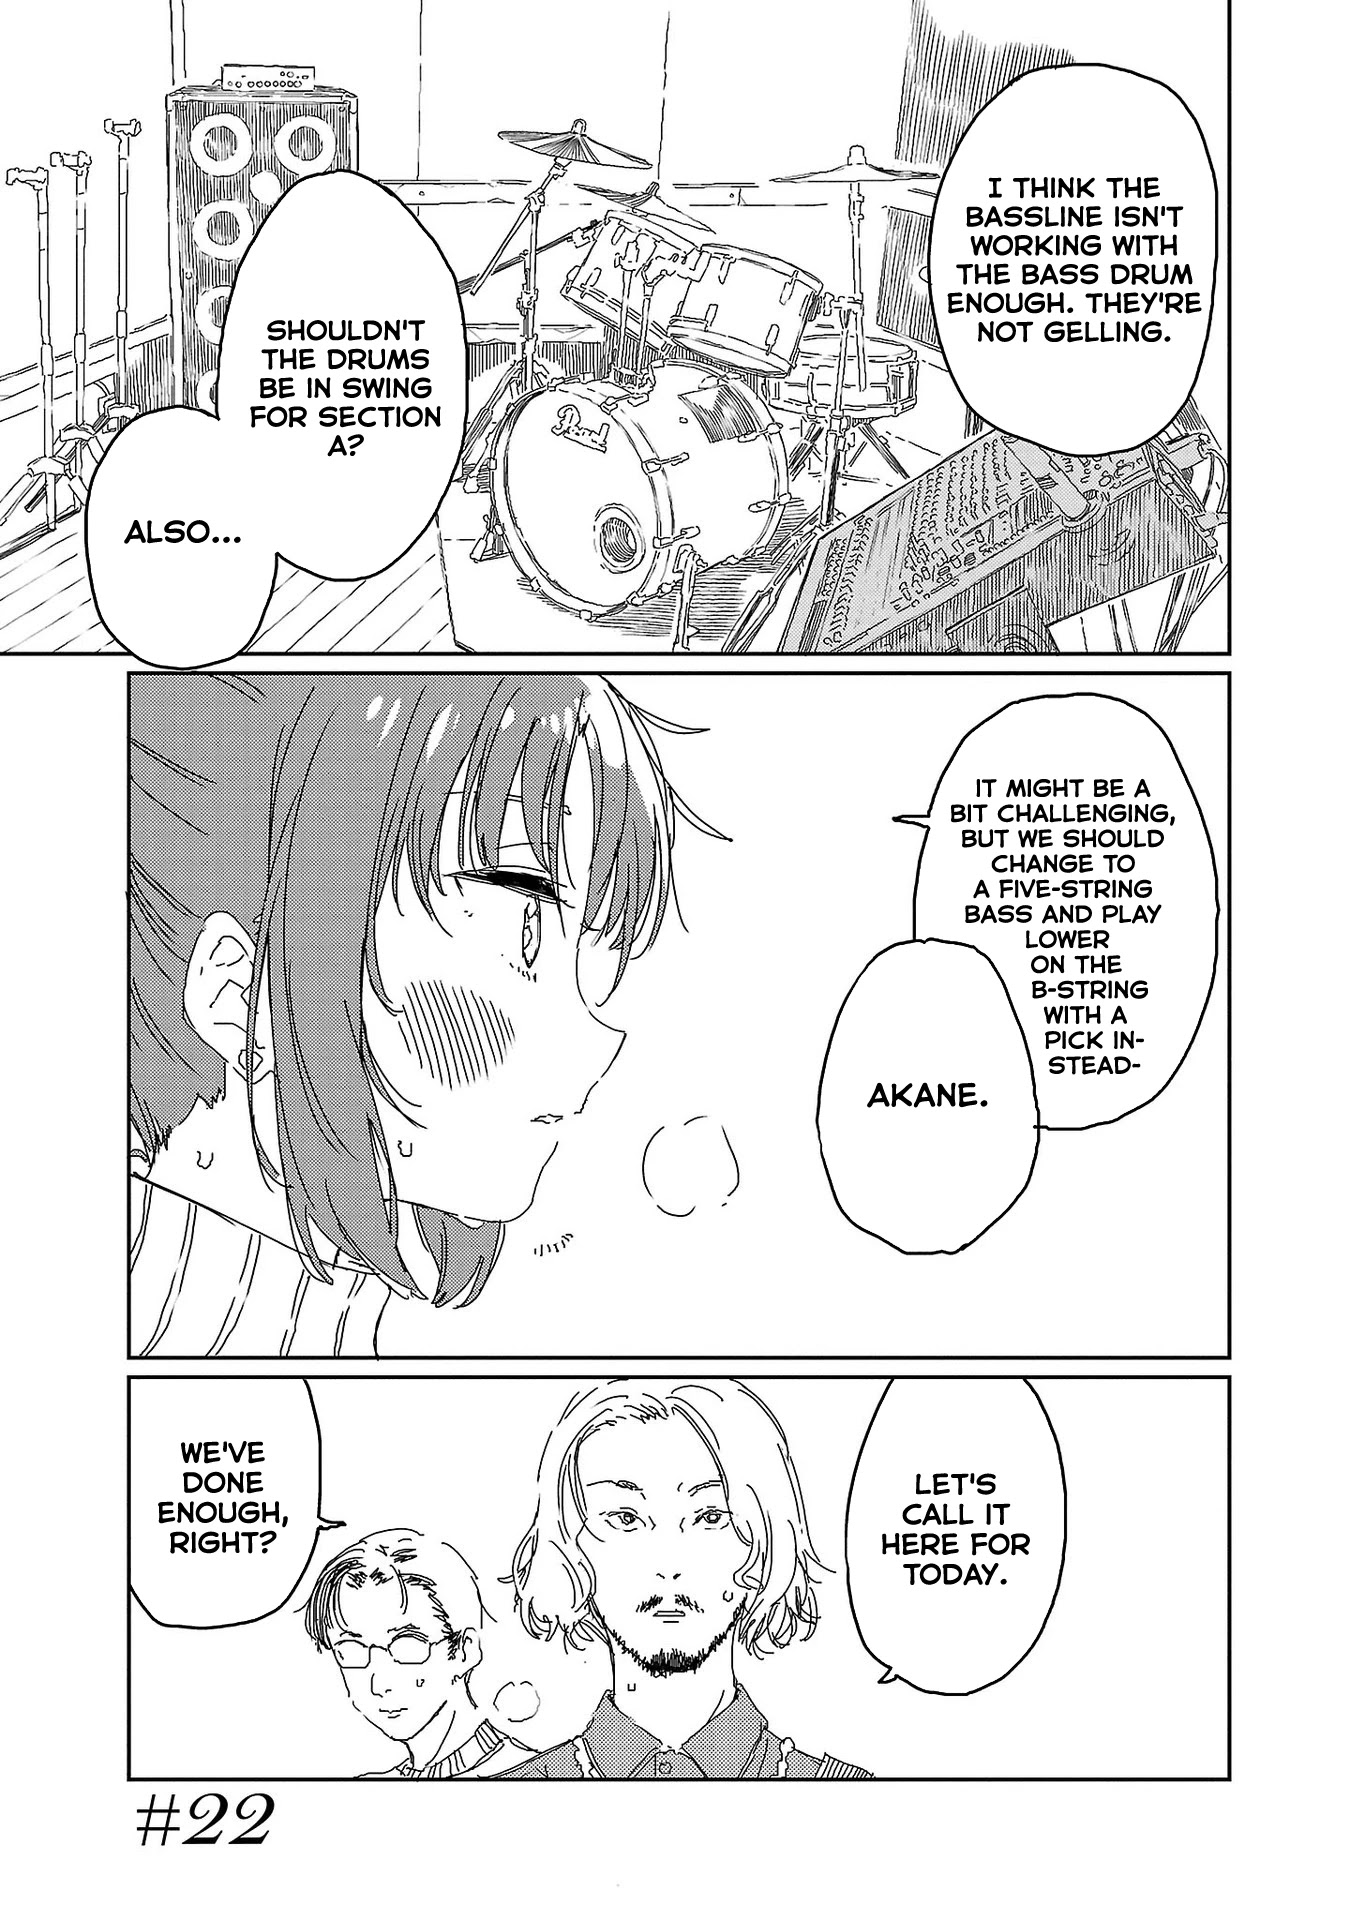 Kamiina Botan, Yoeru Sugata Wa Yuri No Hana. - Page 1